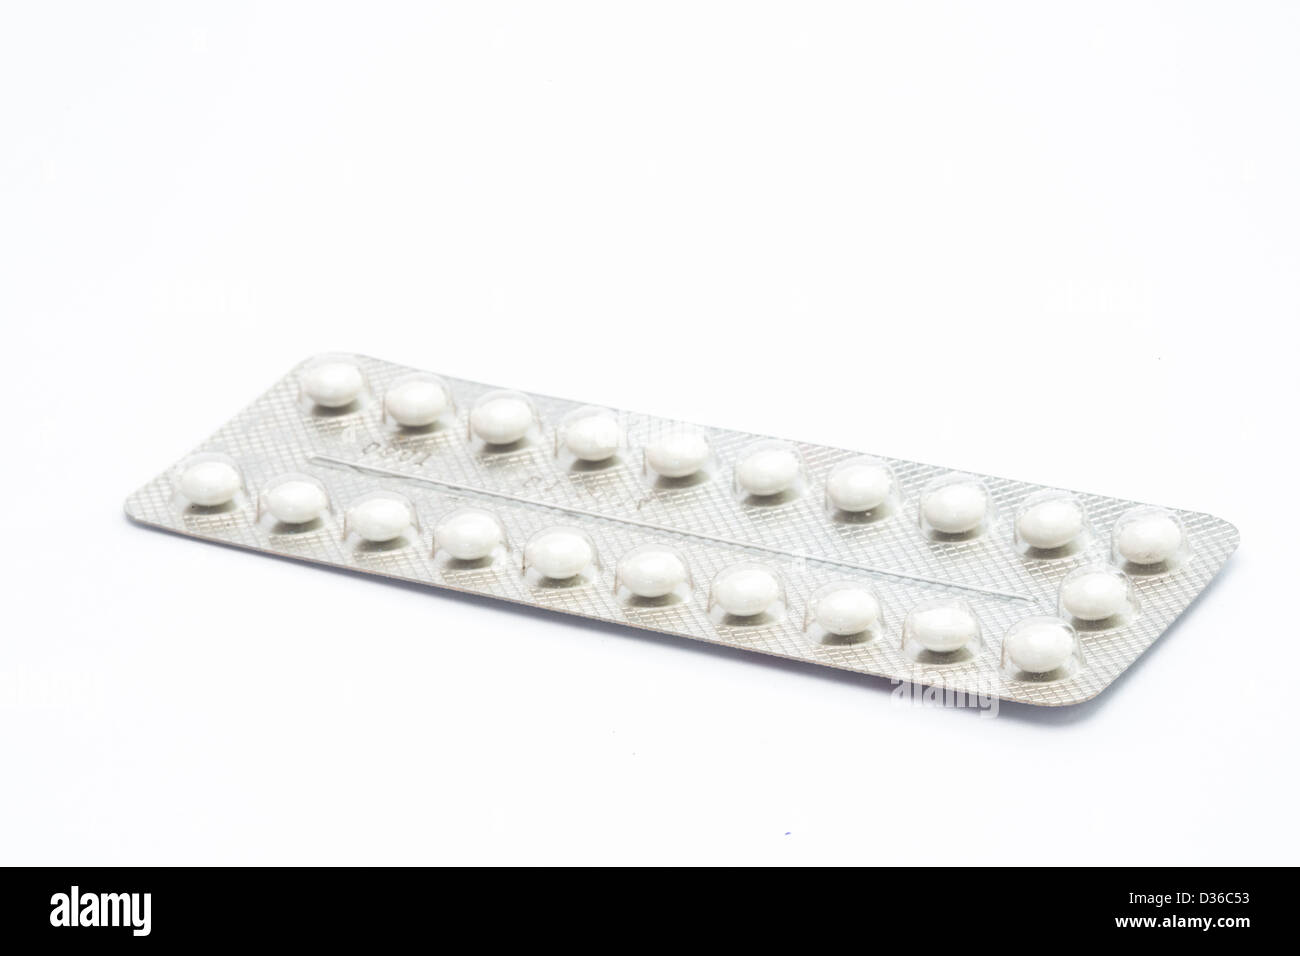 Contraceptive pill Stock Photo